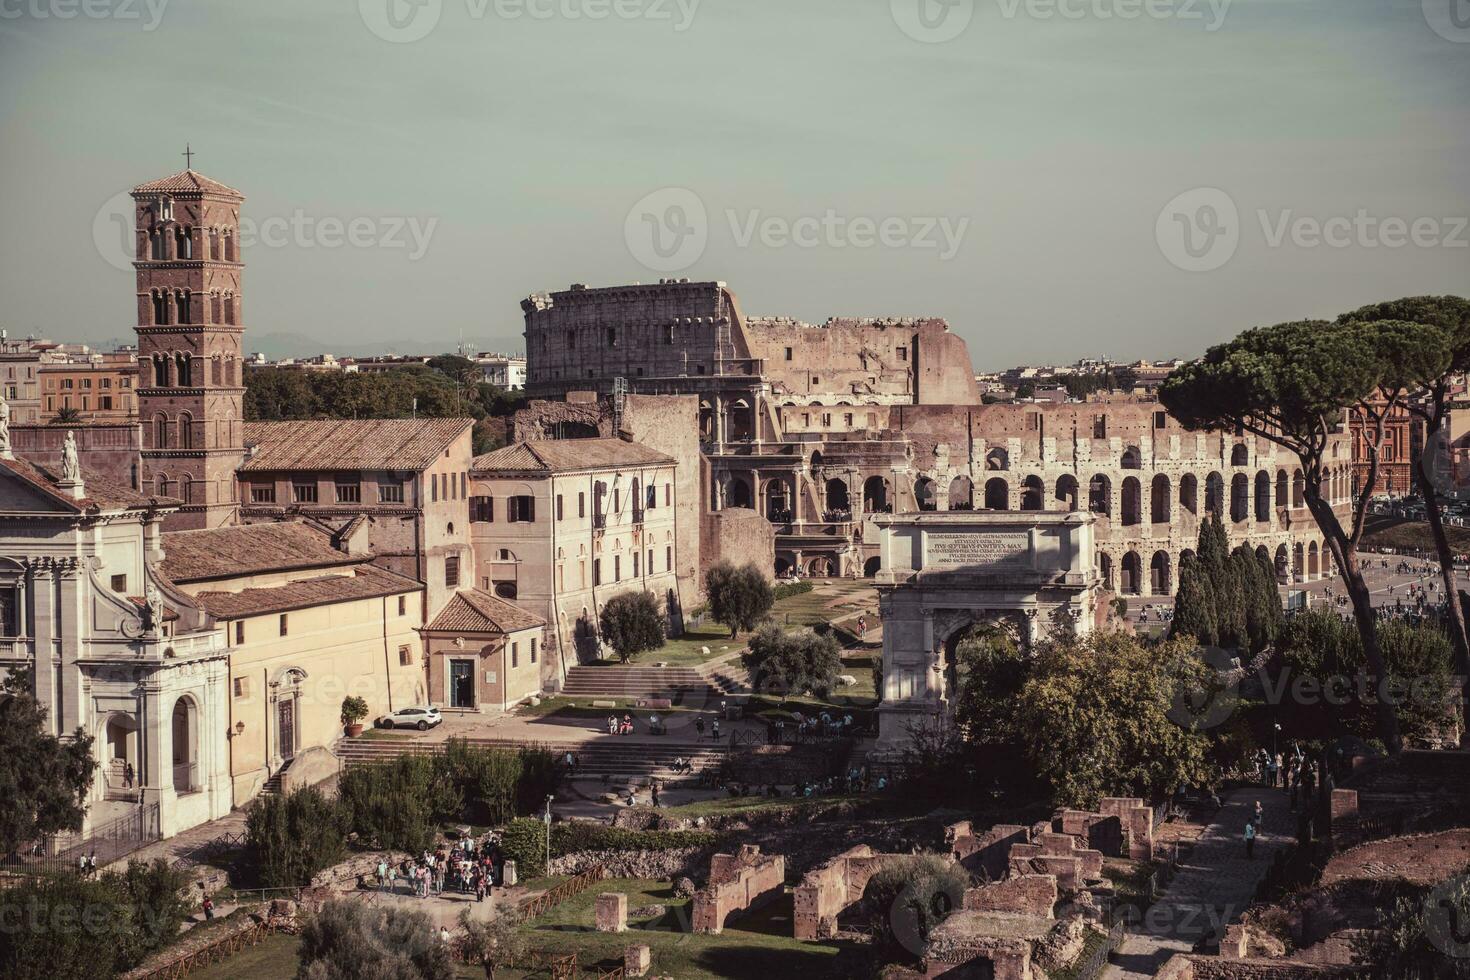 Aussicht von Colosseo von Palatino hügel. Rom. Italien. warm Farben. foto